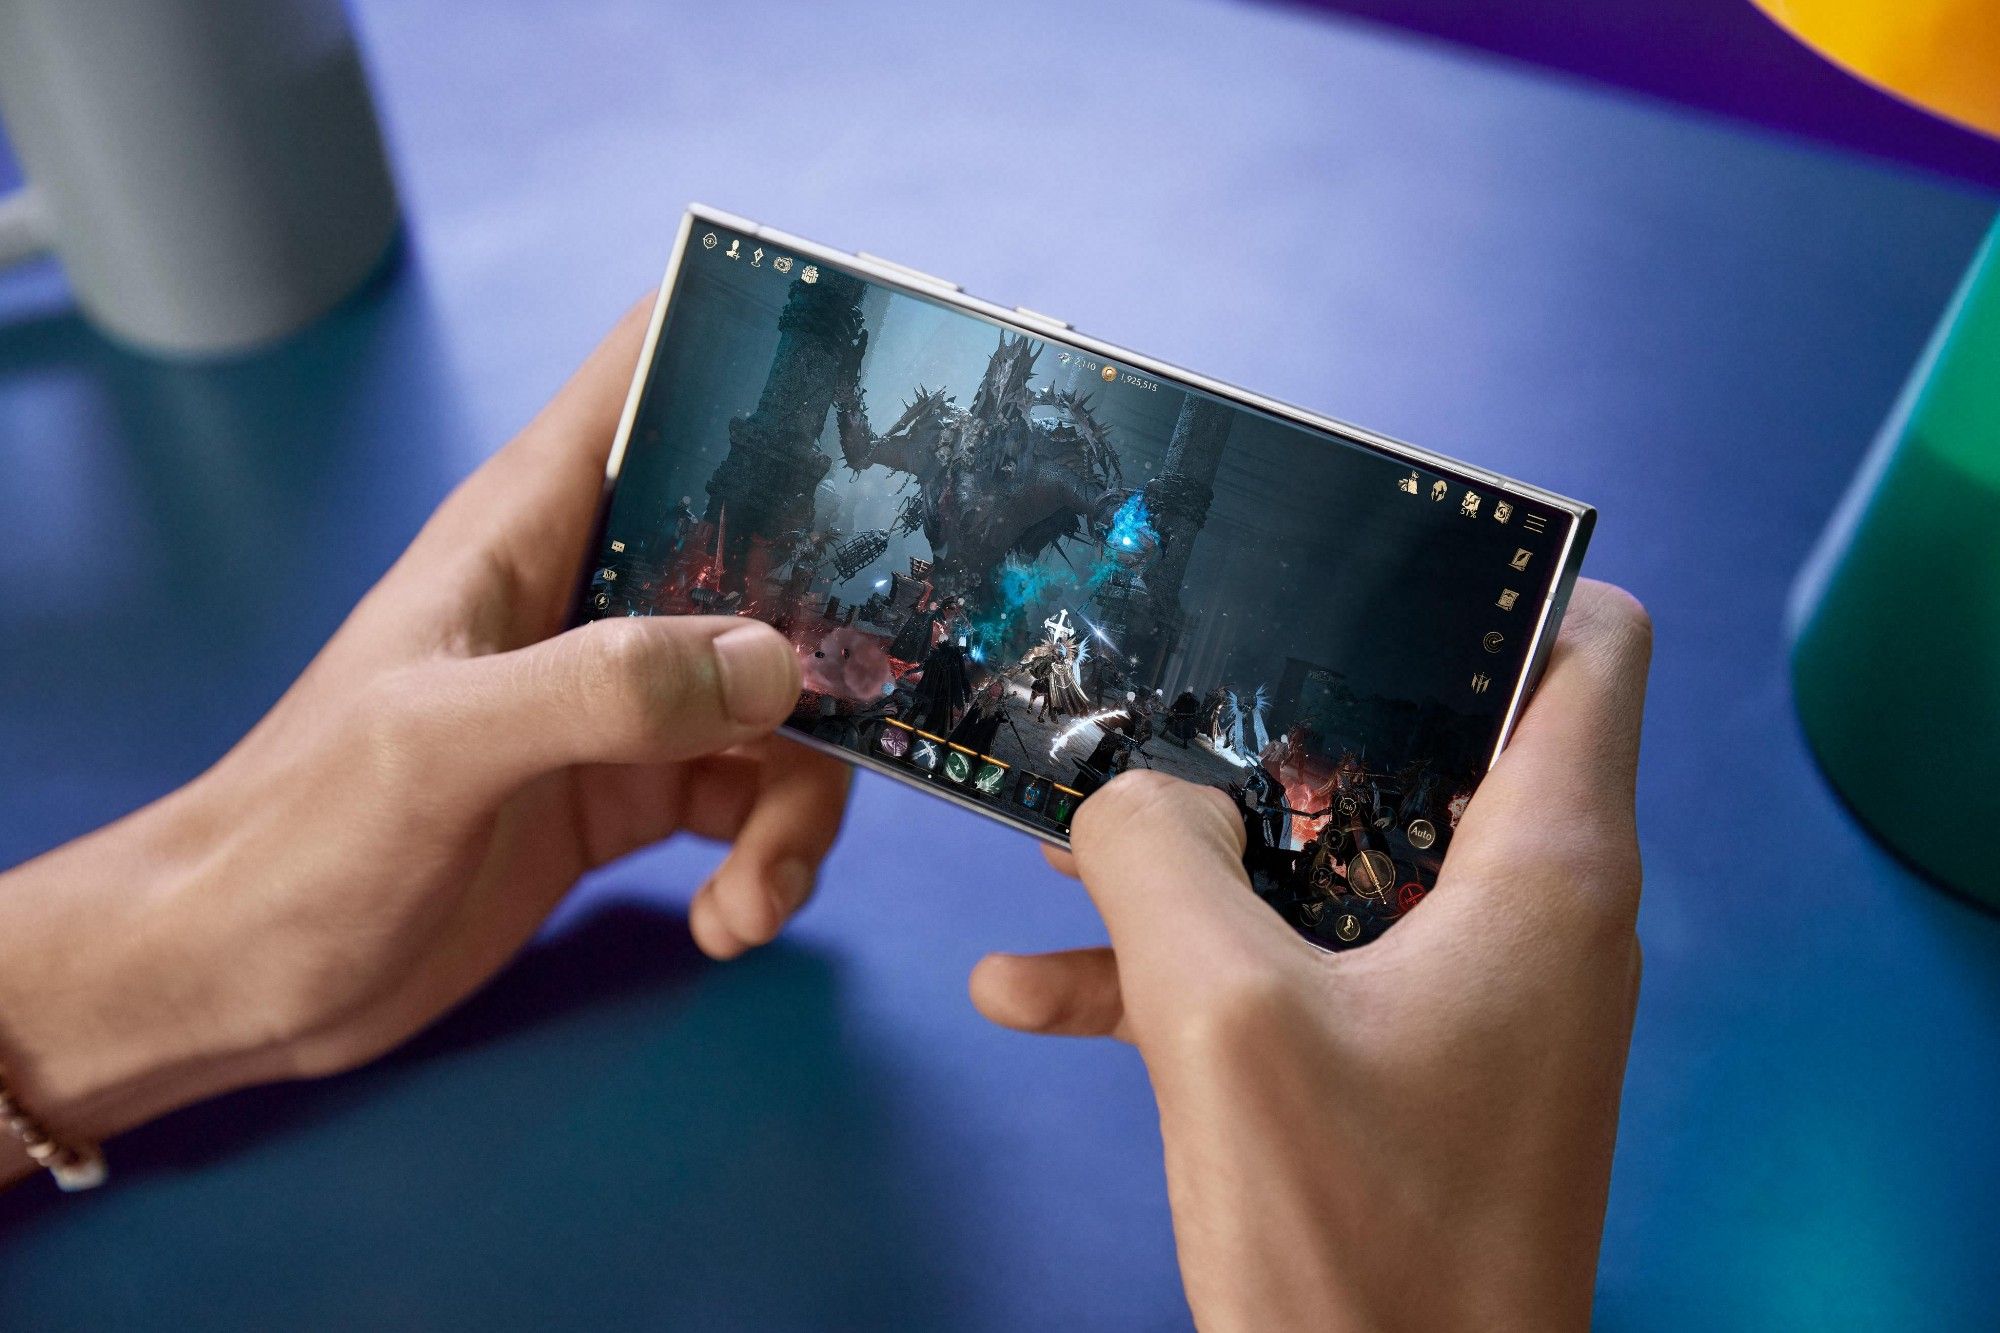 Ultra Wide Fit Screen Protector für Samsung Galaxy S24 Ultra,  Displayschutzglas, Displayschutzfolie, stoßfest, kratzbeständig